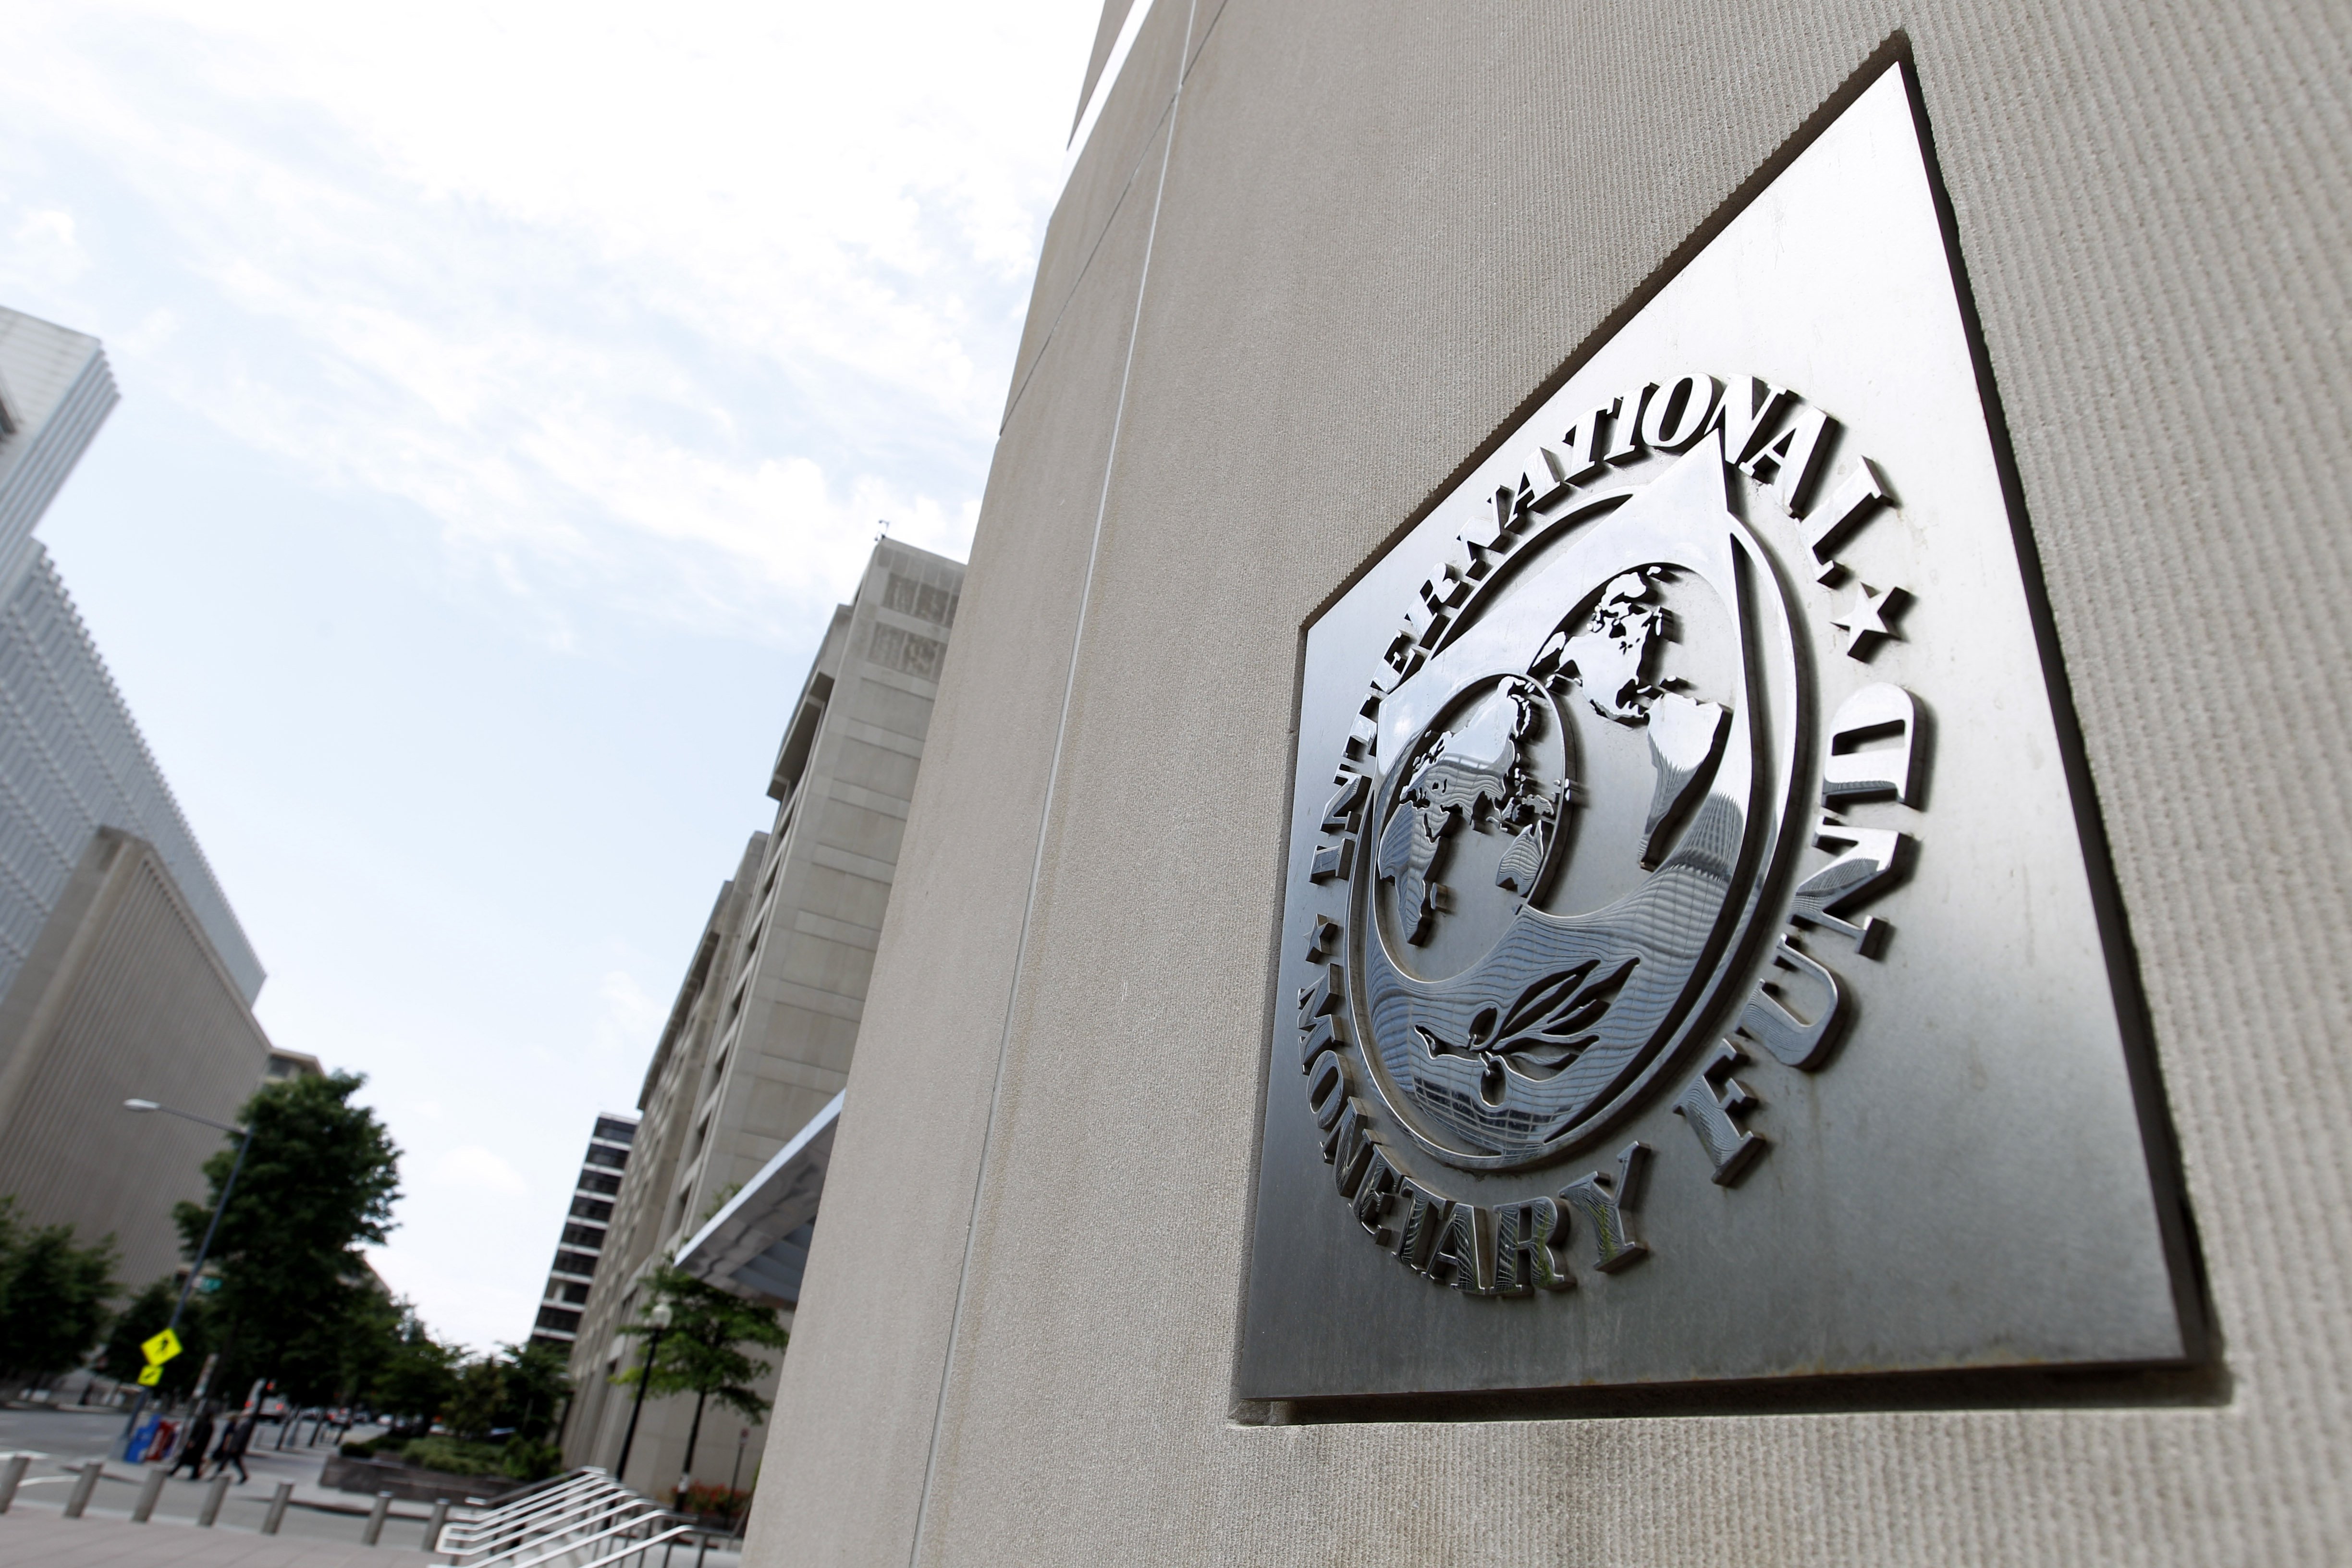 Мировой валютный фонд. Штаб квартира МВФ В Вашингтоне. МВФ (Международный валютный фонд флаг. Здание МВФ США. Главный офис МВФ.